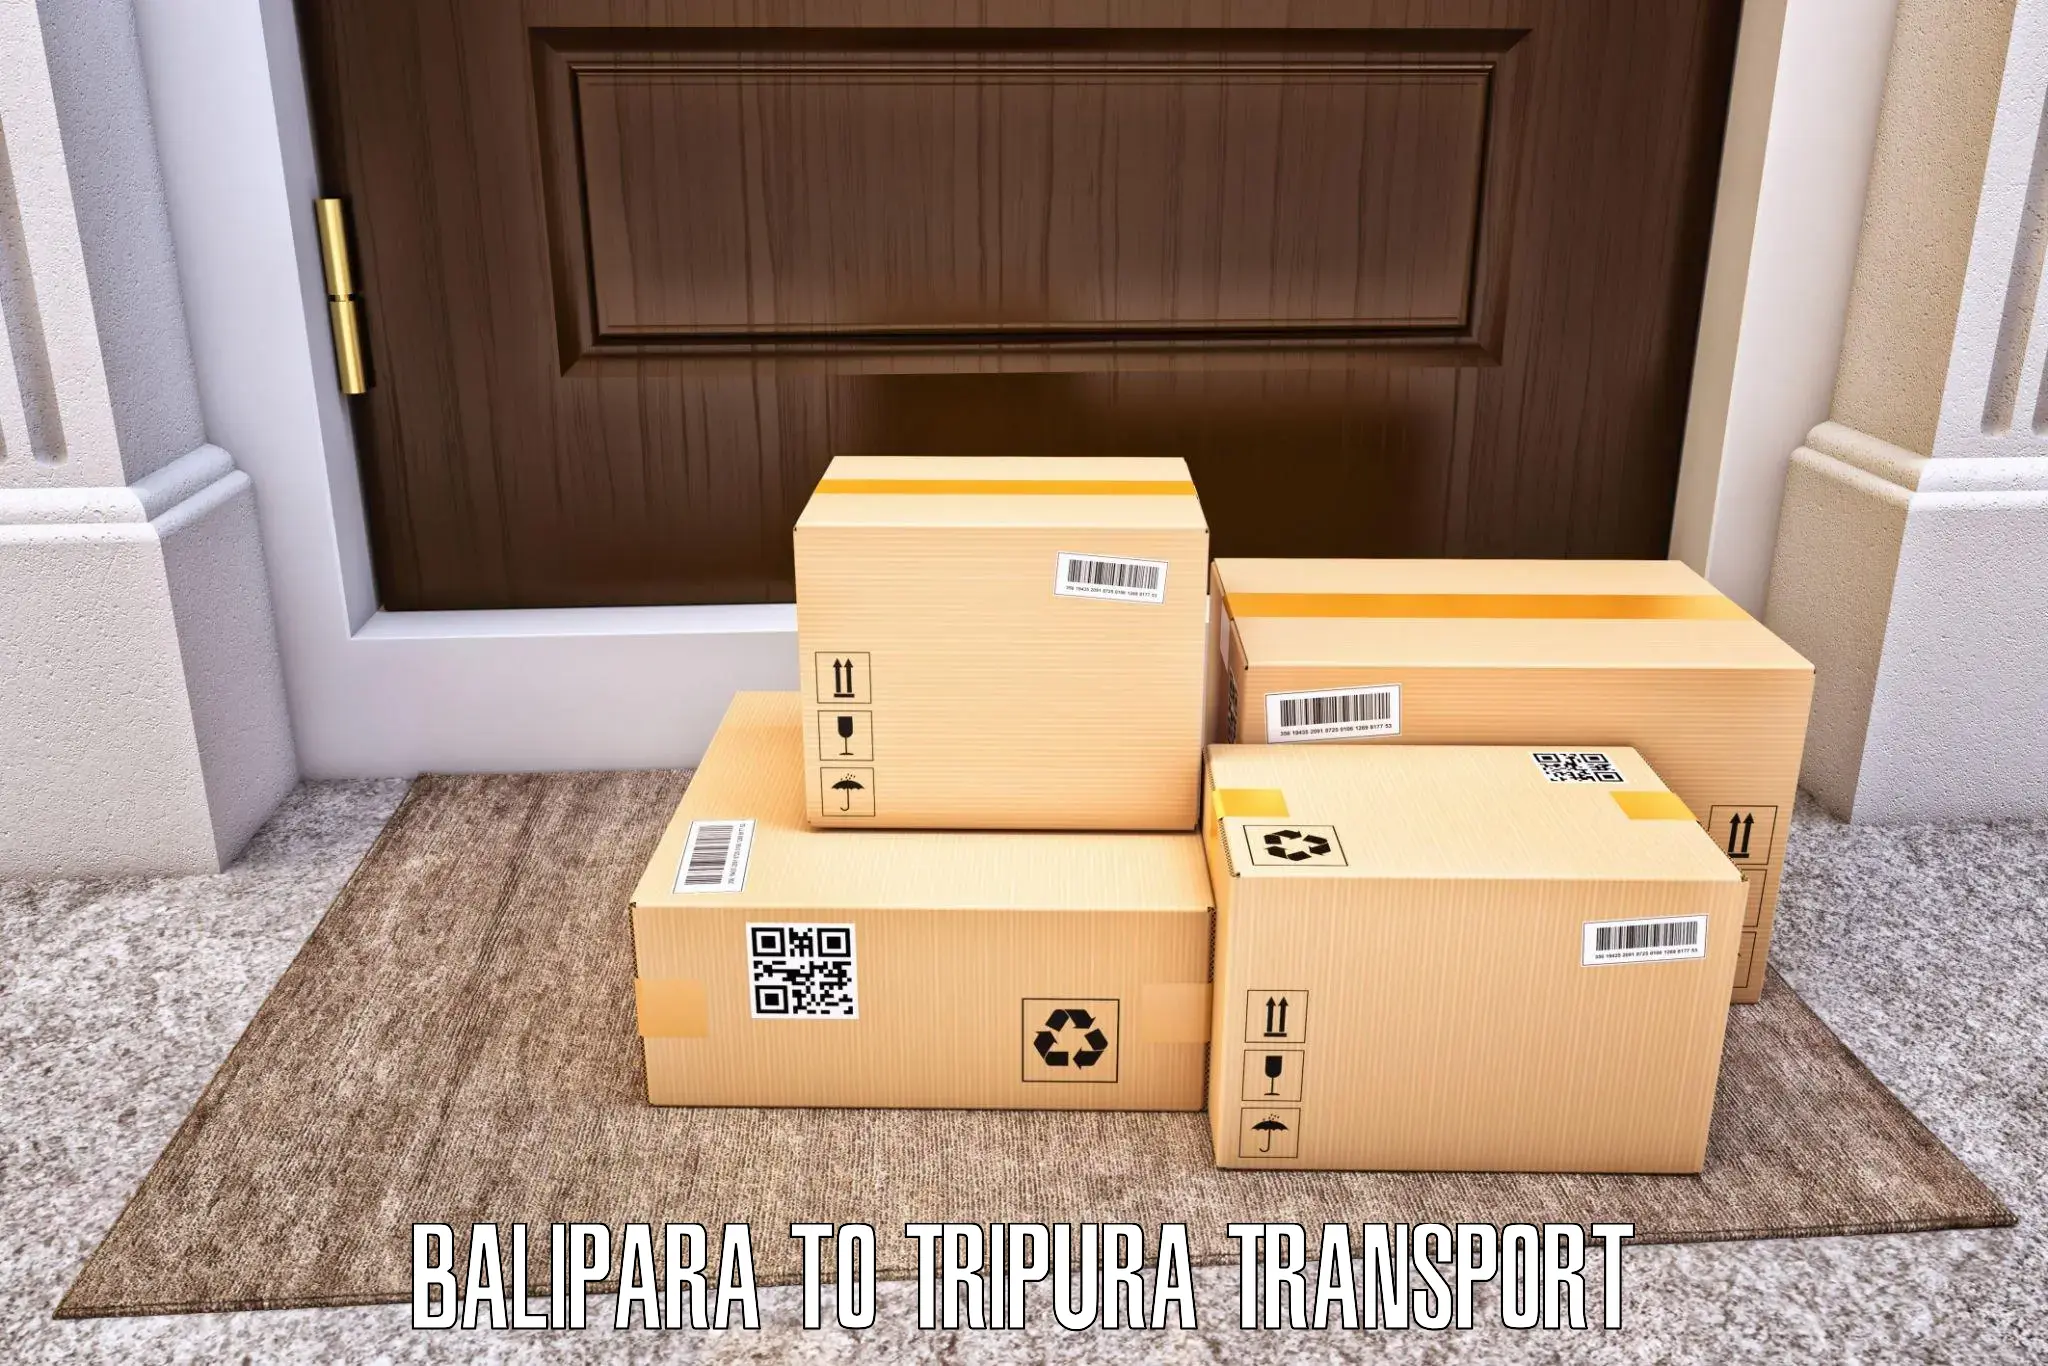 Daily transport service Balipara to Ambassa